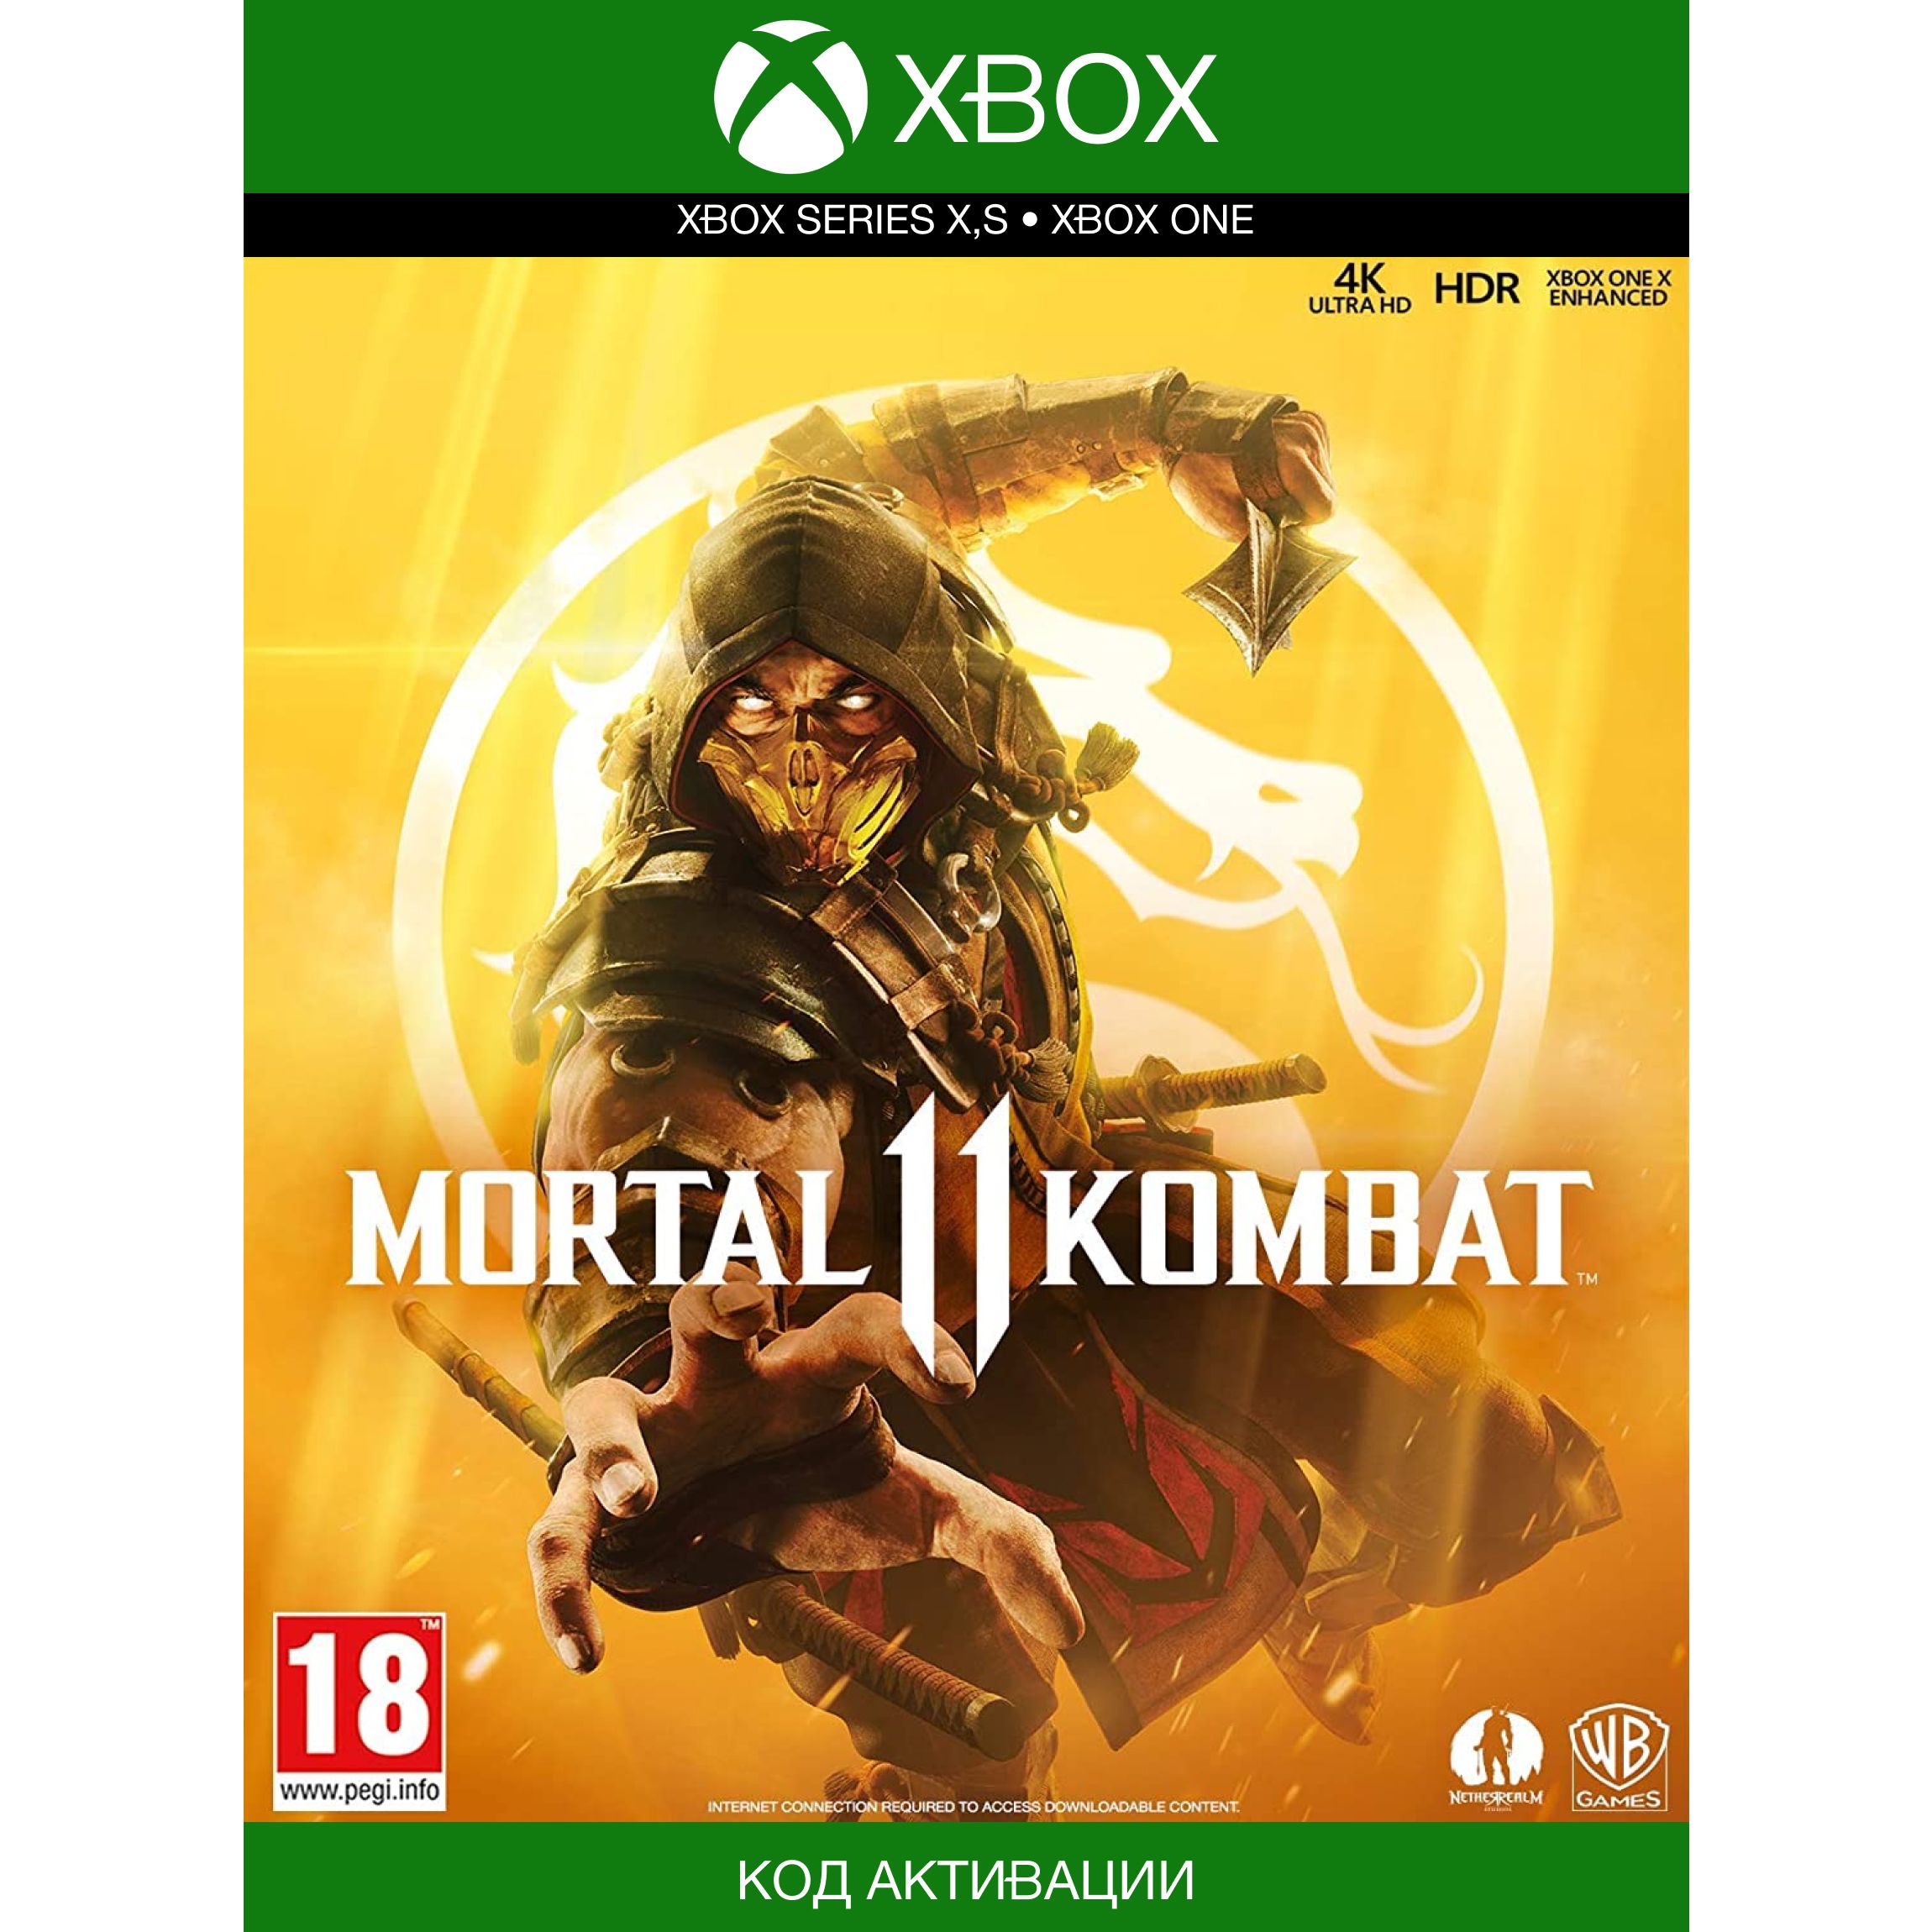 Мк 11 на пс4. Скорпион мортал комбат 11. Mortal Kombat 11 (ps4). Mortal Kombat 11 [Xbox one]. Мортал комбат 11 на плейстейшен 4.